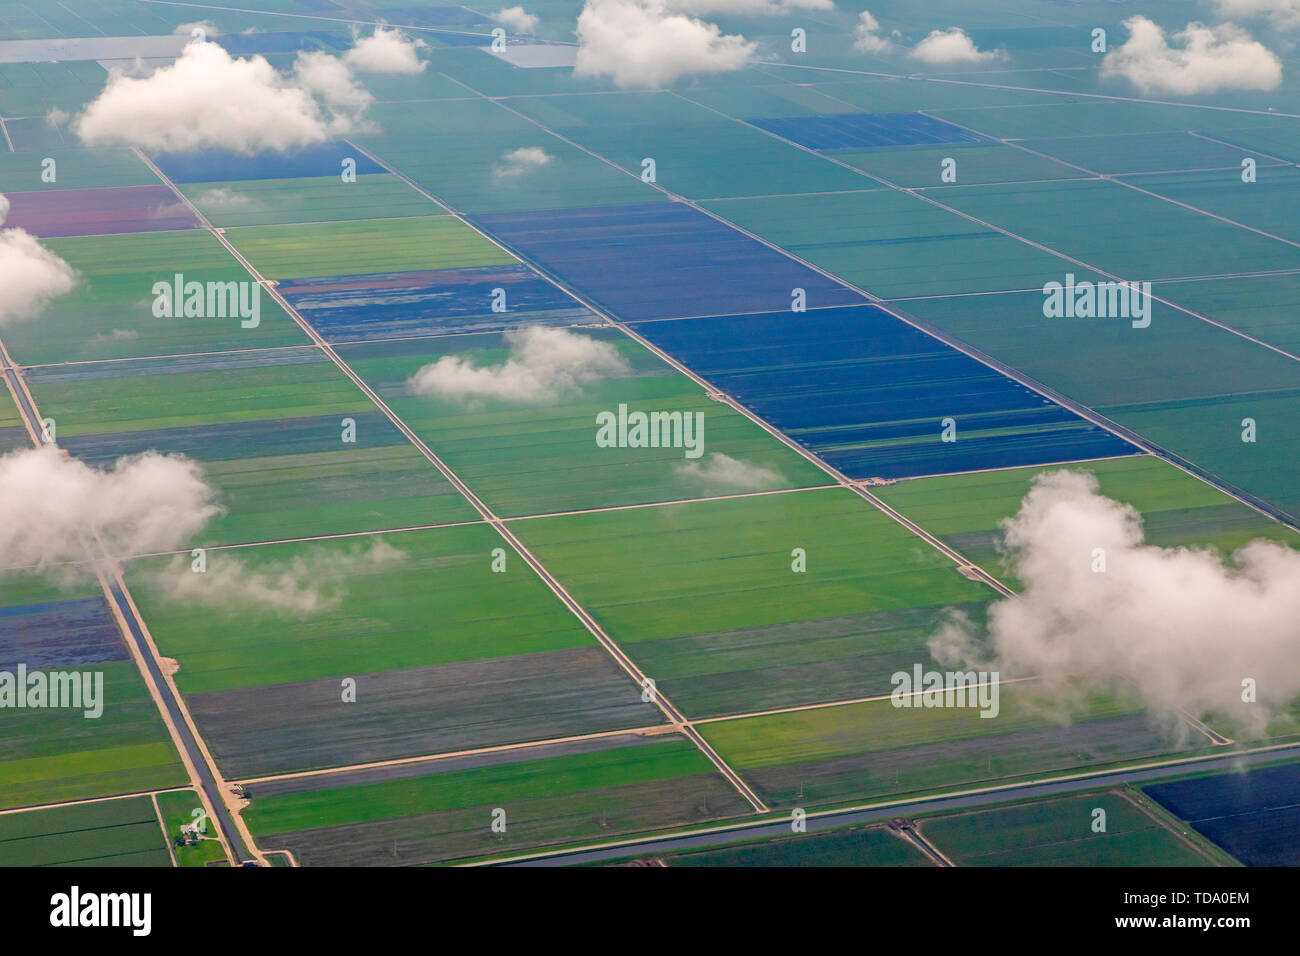 Belle Glade, Florida - Una veduta aerea di campi di fattoria vicino al lago Okeechobee in Florida del sud. Foto Stock